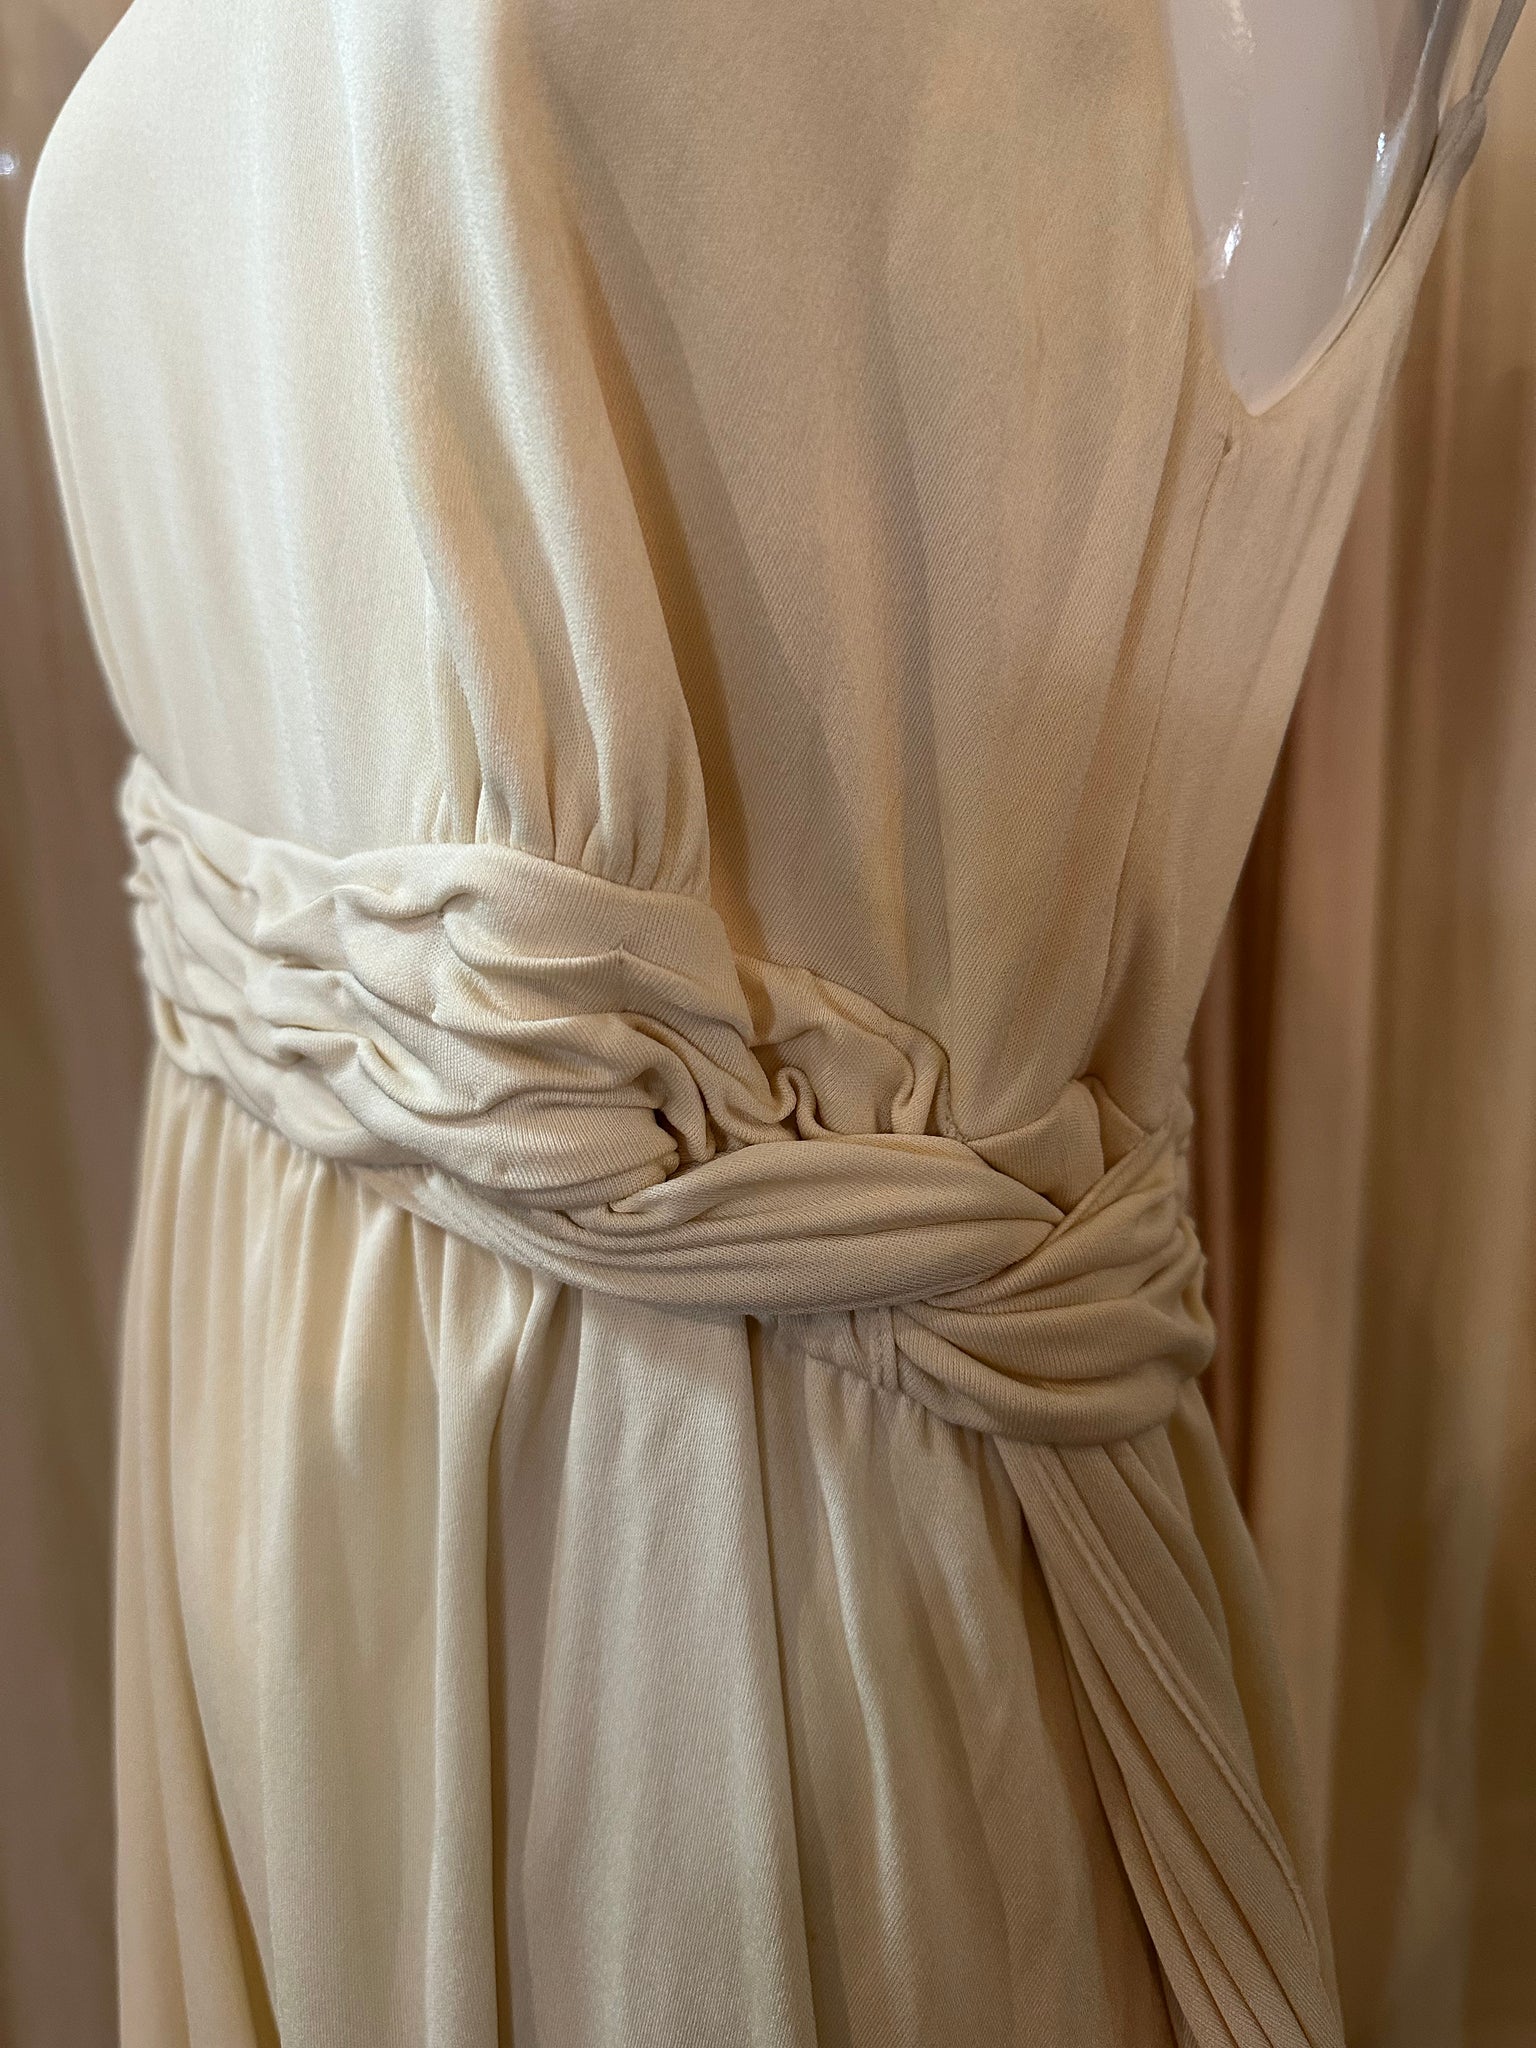 Karl Lagerfeld 90s White Jersey Goddess Mini Dress DETAIL 5 of 6